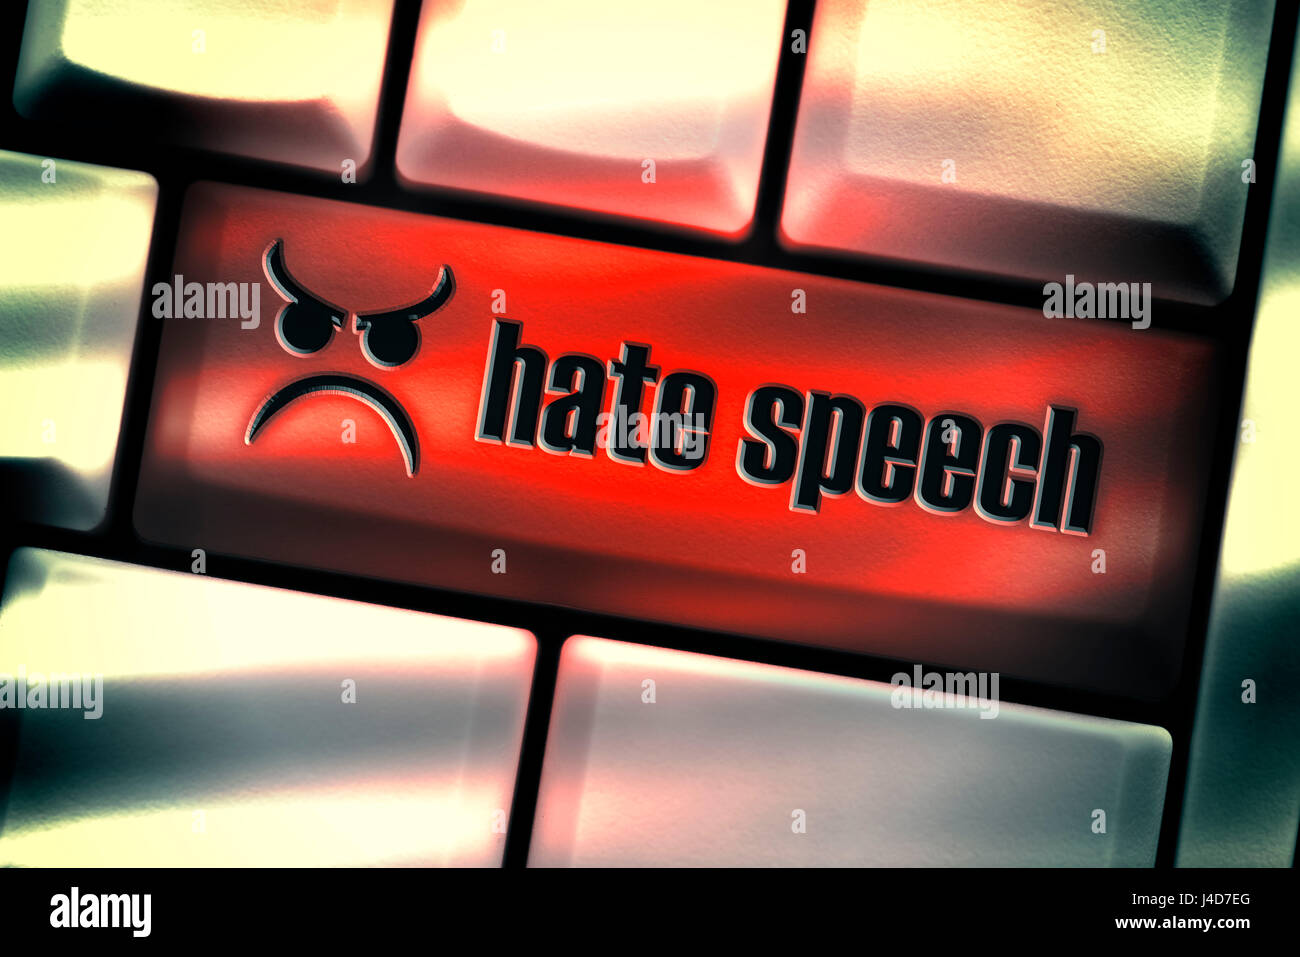 Computer-Schlüssel mit der Bezeichnung Hassreden, Hass reden über soziale Netzwerke, Computertaste Mit der Aufschrift Hate Speech, Hassreden in Sozialen Netzwe Stockfoto